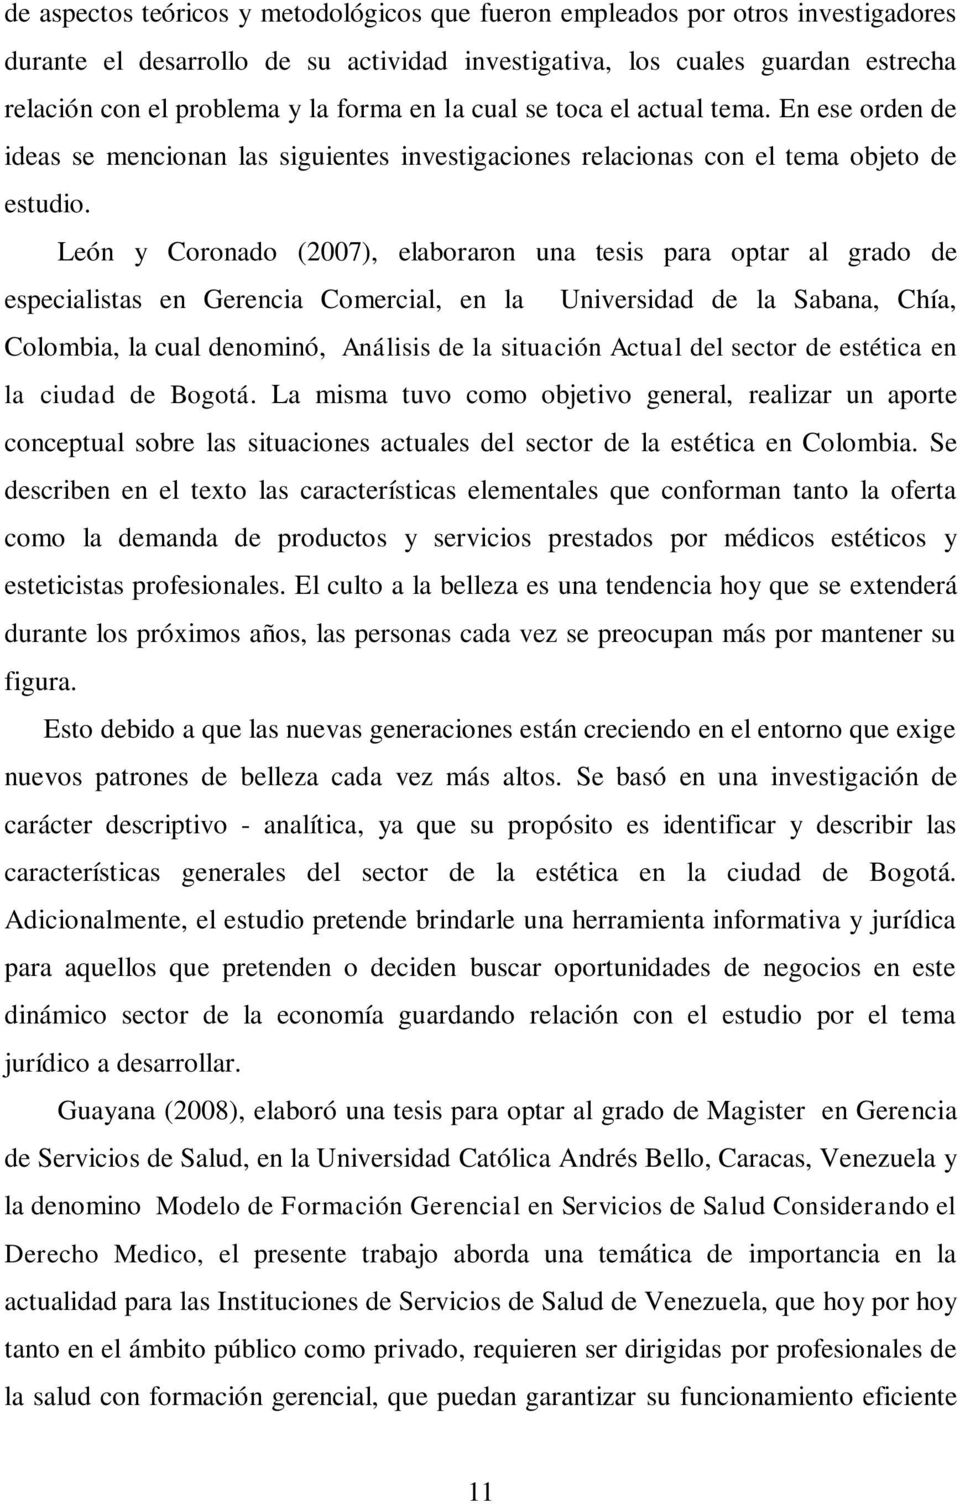 León y Coronado (2007), elaboraron una tesis para optar al grado de especialistas en Gerencia Comercial, en la Universidad de la Sabana, Chía, Colombia, la cual denominó, Análisis de la situación